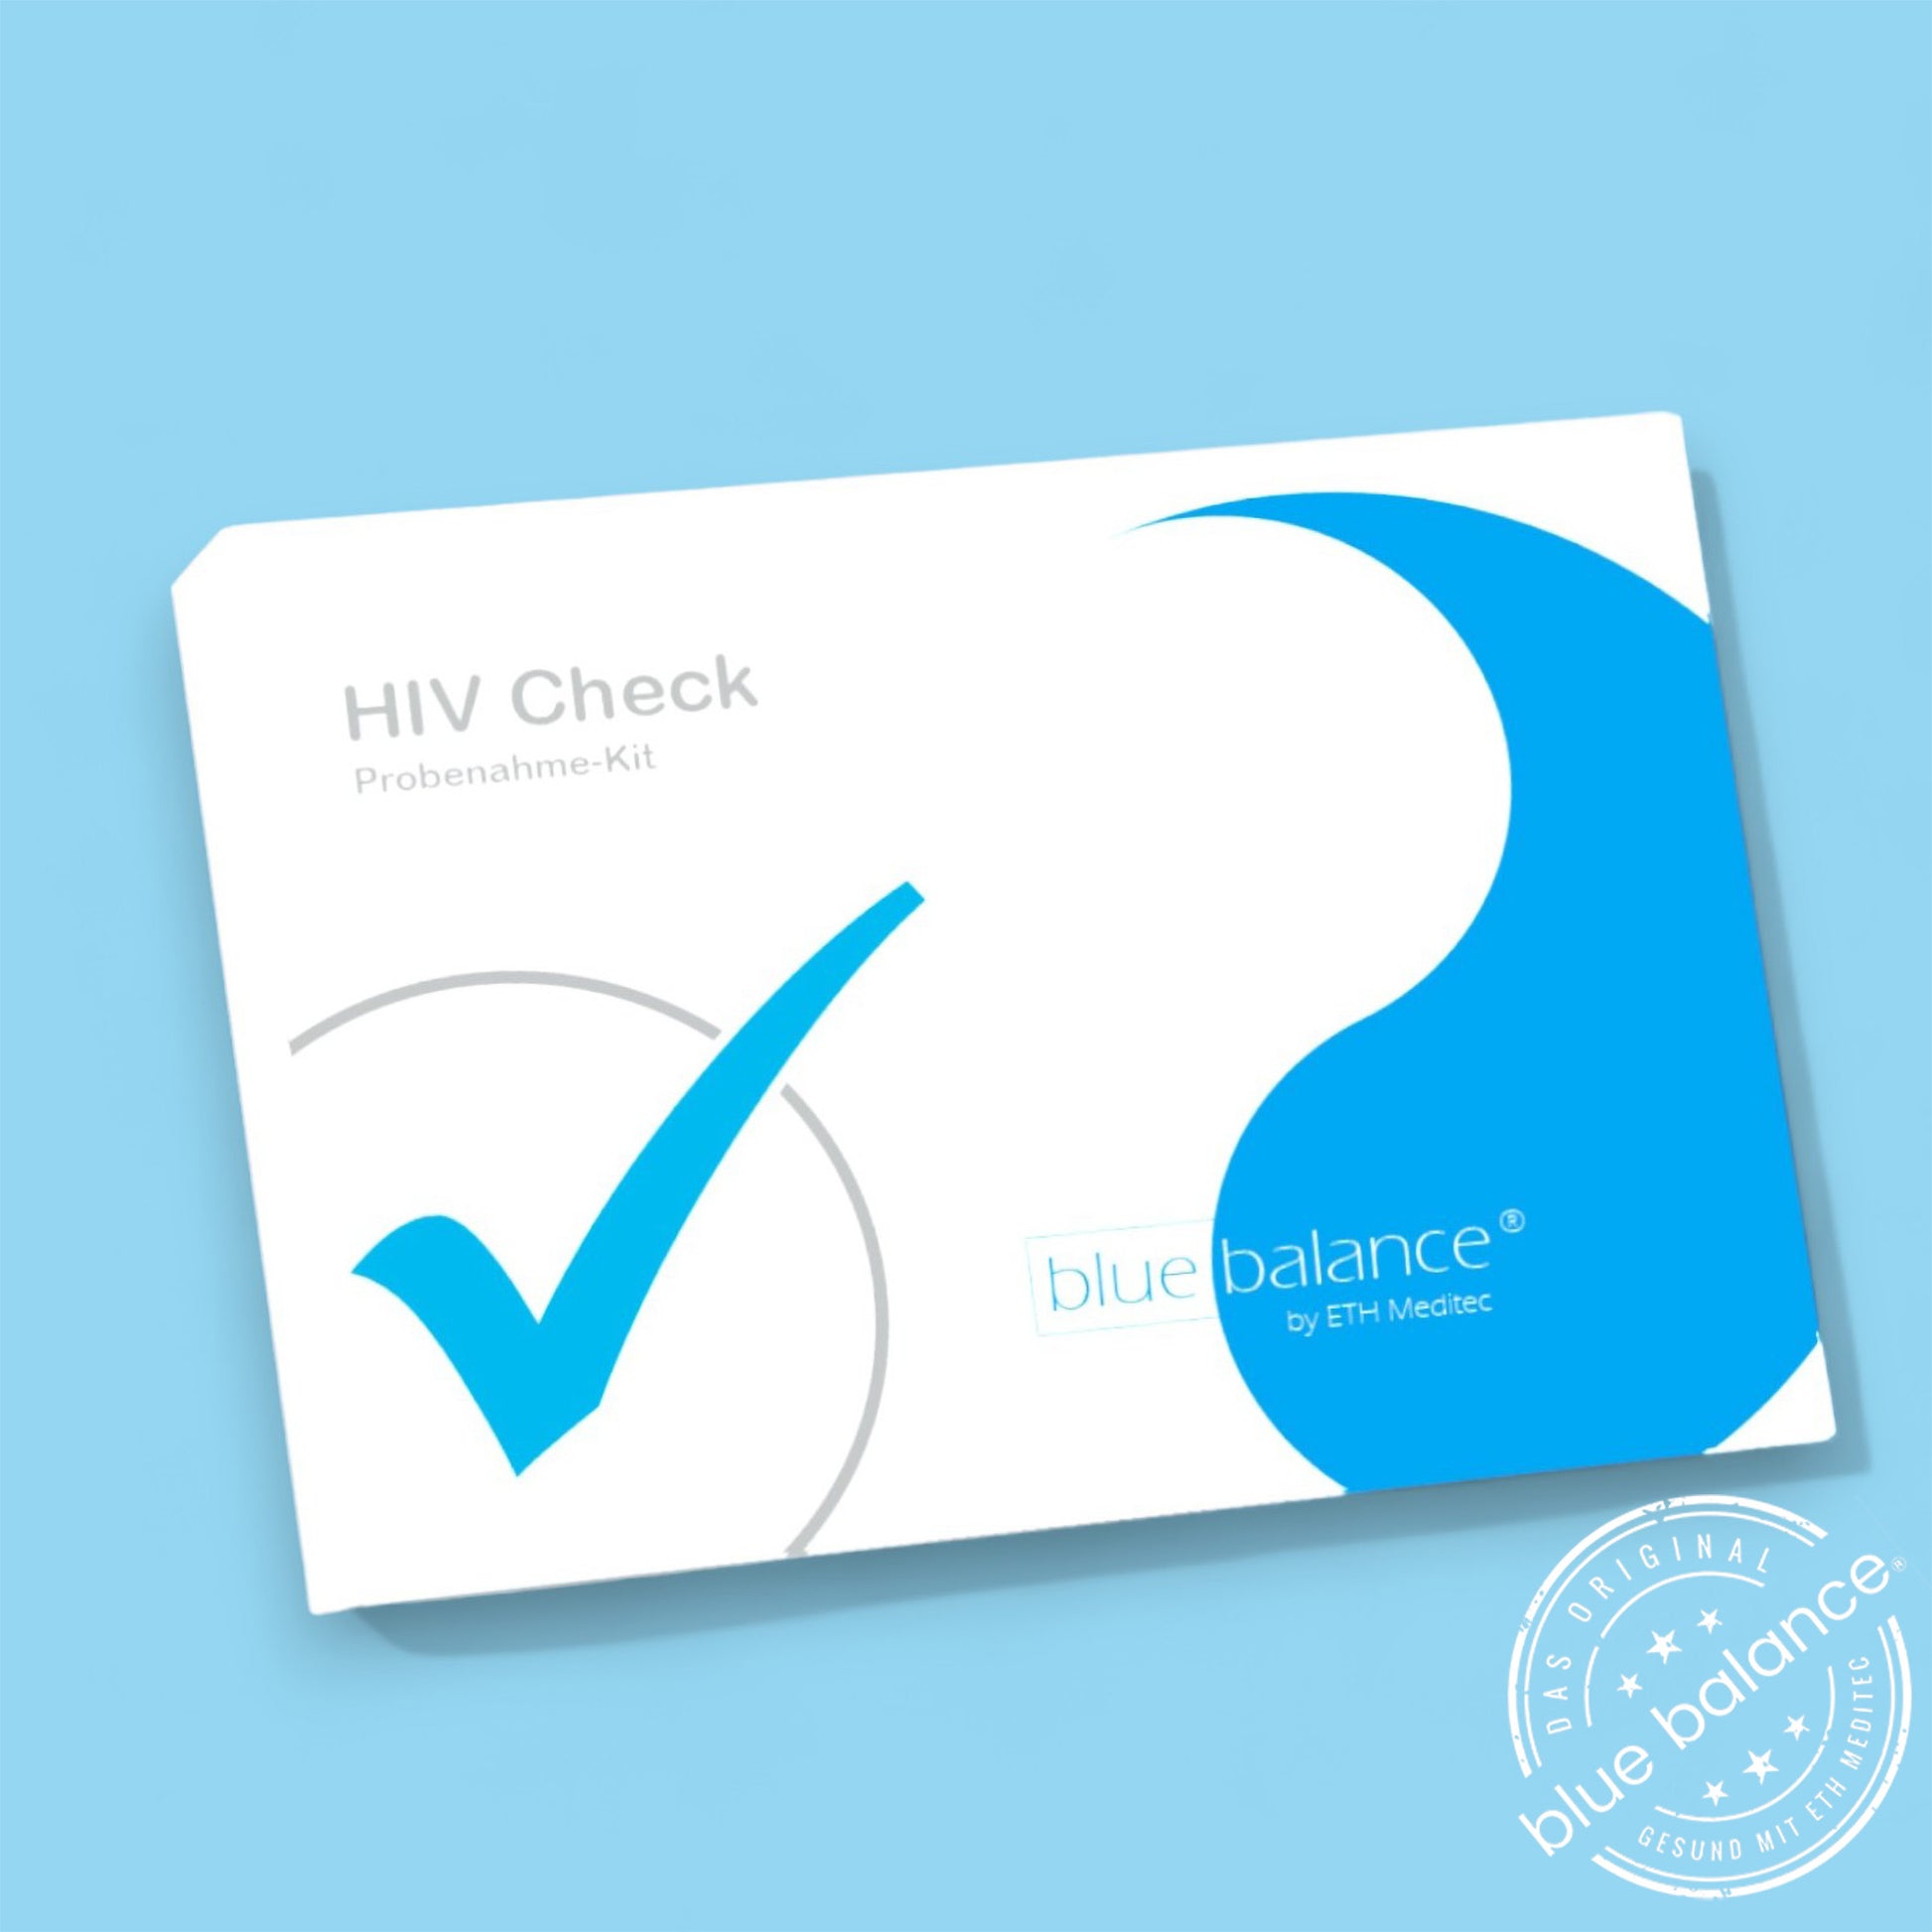 Der blue balance® HIV-Test bietet eine einfache und diskrete Möglichkeit, den HIV-Status zu Hause zu überprüfen. Mithilfe von Antikörper- und Antigentests wird eine genaue Analyse Ihrer Fingerblutprobe durchgeführt, um zuverlässige Ergebnisse zu liefern und Ihre Anonymität zu wahren.